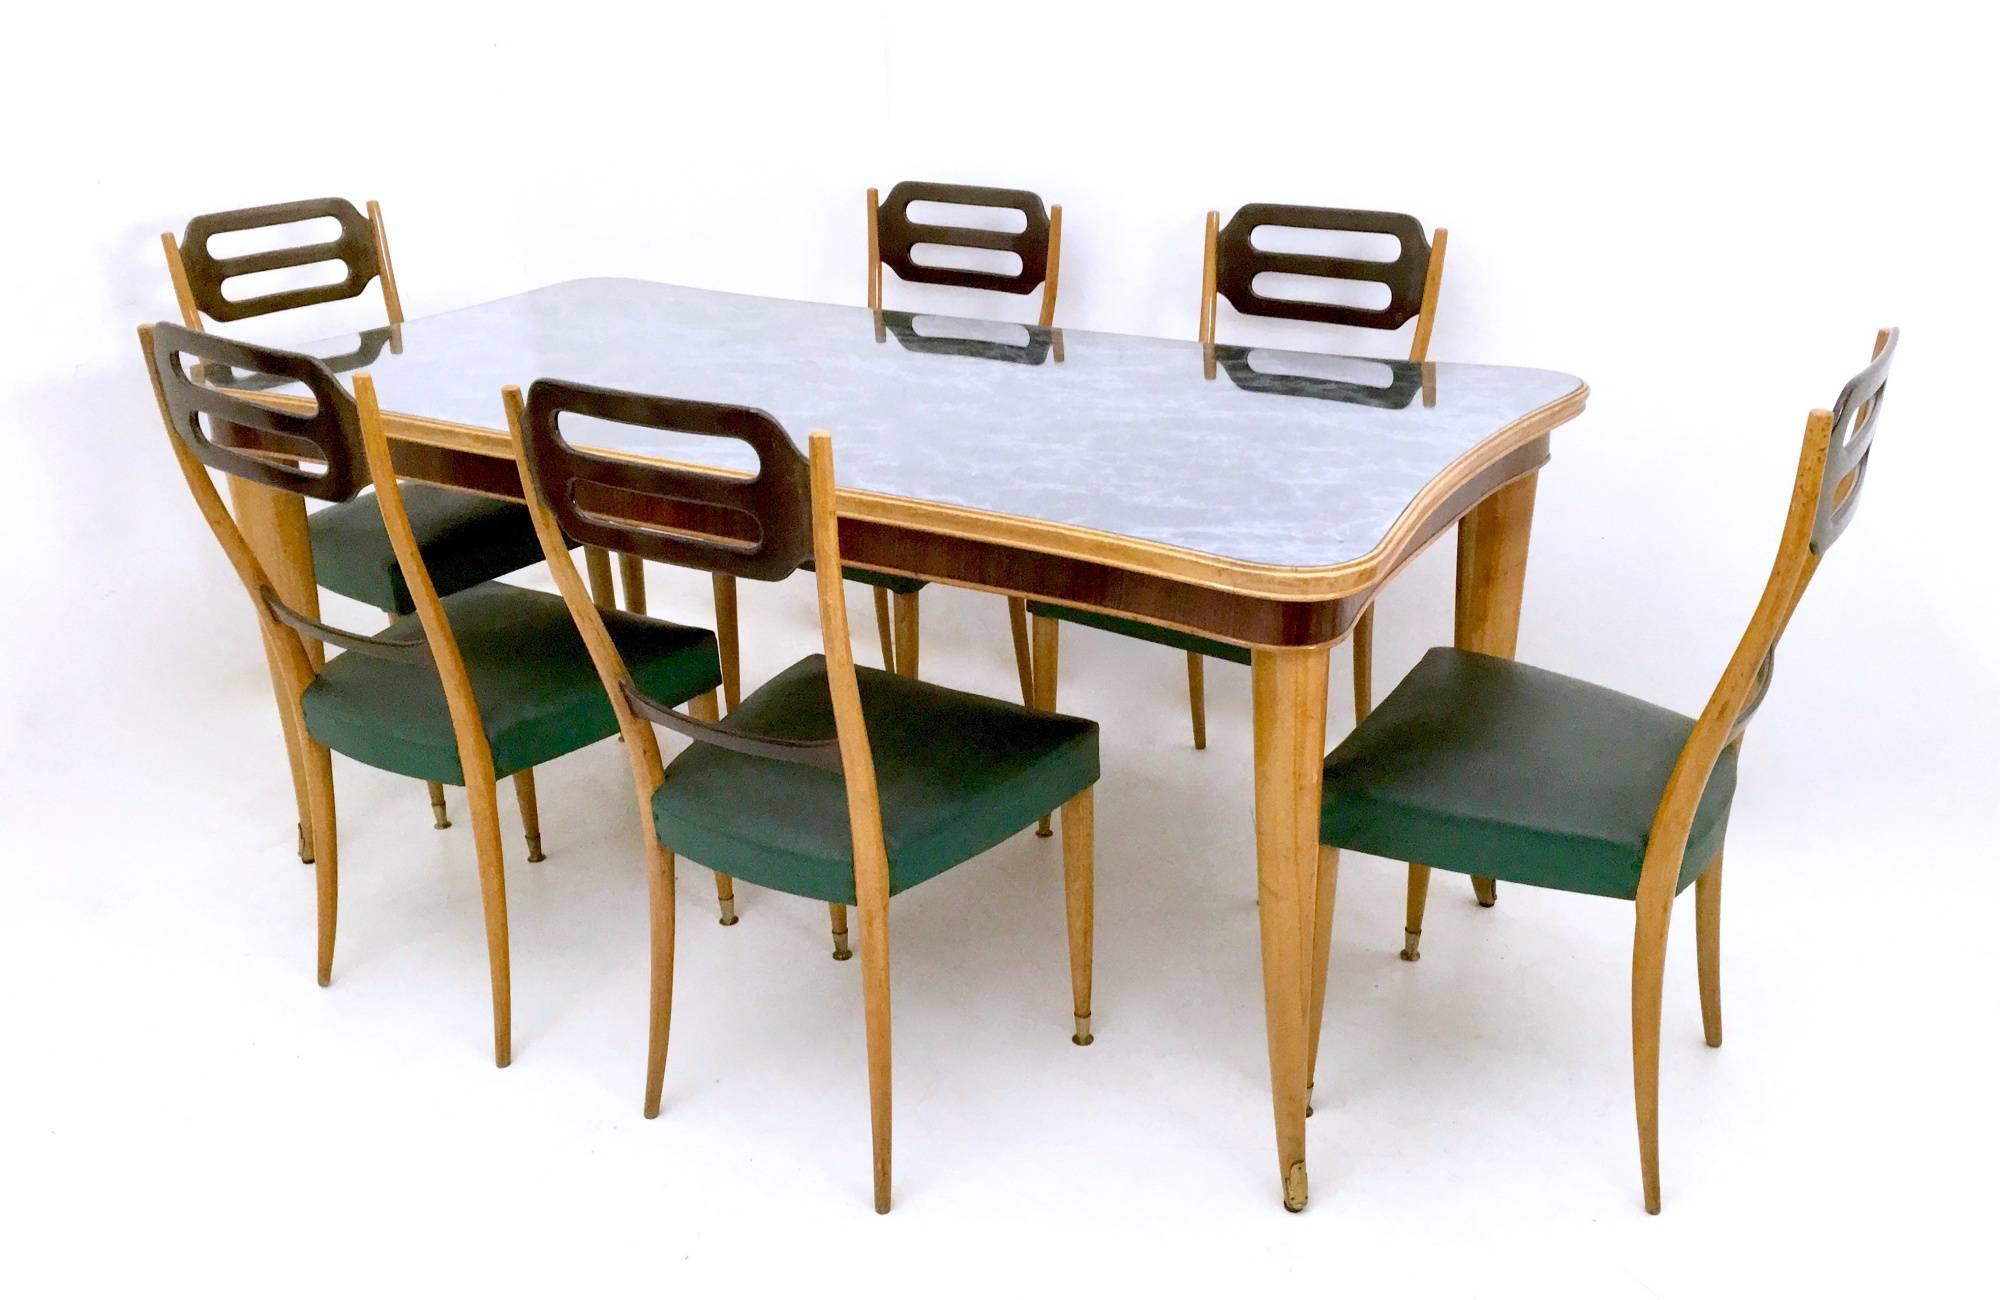 Hergestellt in Italien, 1950er Jahre. 
Der Rahmen besteht aus Ahorn und Buche, die Füße sind aus Messing.
Dieser Tisch hat eine Glasplatte, unter der sich die ursprüngliche Folie mit Marmormuster befindet.
Es handelt sich um ein Vintage-Stück, daher